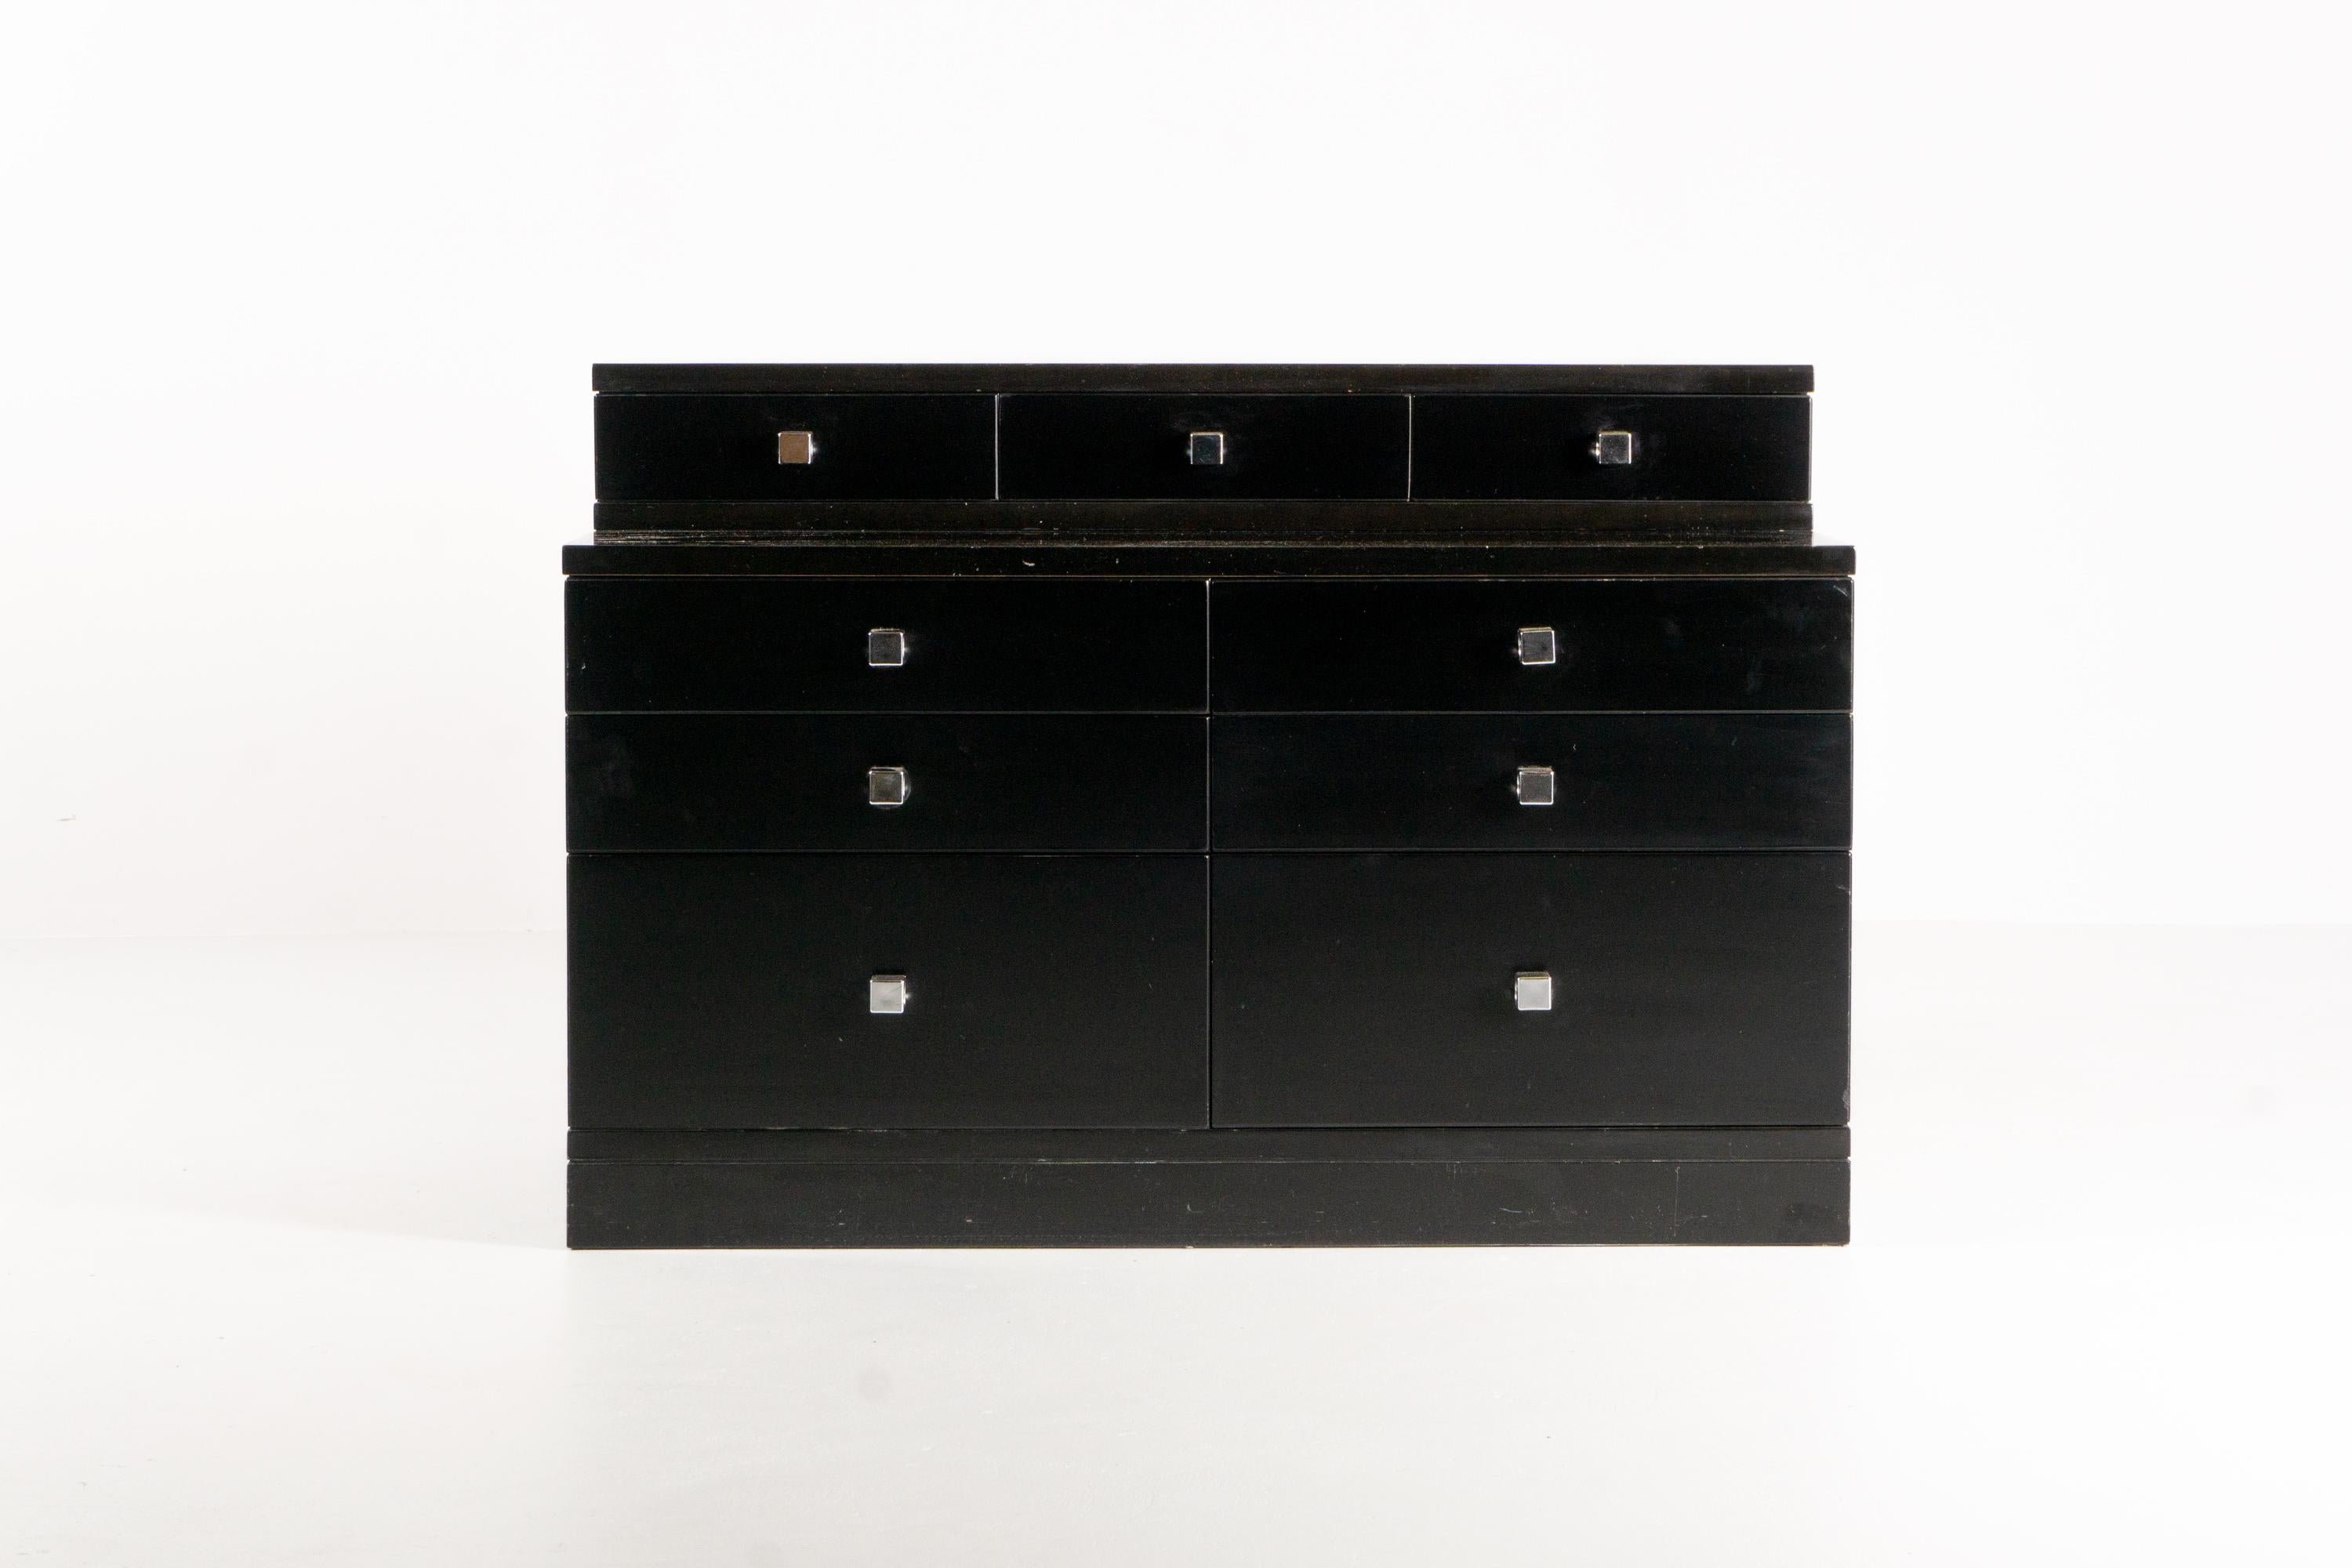 Dieser außergewöhnliche Schubladenschrank aus schwarz lackiertem Holz wurde um 1970 von dem Architekten und Designer Ico Parisi entworfen. Die neun unterschiedlich großen Schubladen sind mit rechteckigen Griffen aus Metall ausgestattet.
Dieses